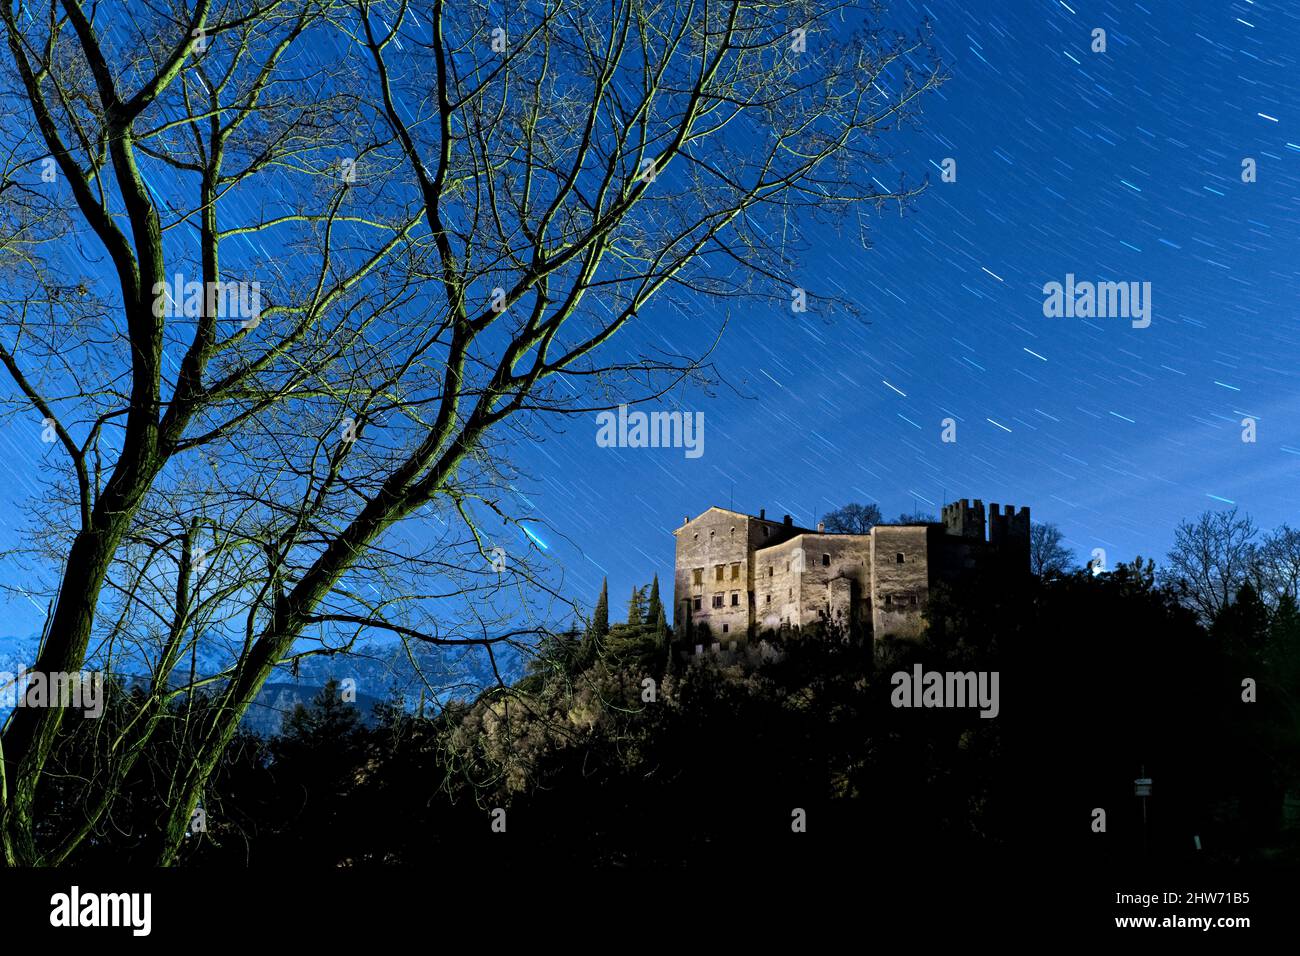 Des arbres squelettiques encadrent le château de Madruzzo lors d'une nuit effrayante. Madruzzo, Trento province, Trentin-Haut-Adige, Italie, Europe. Banque D'Images